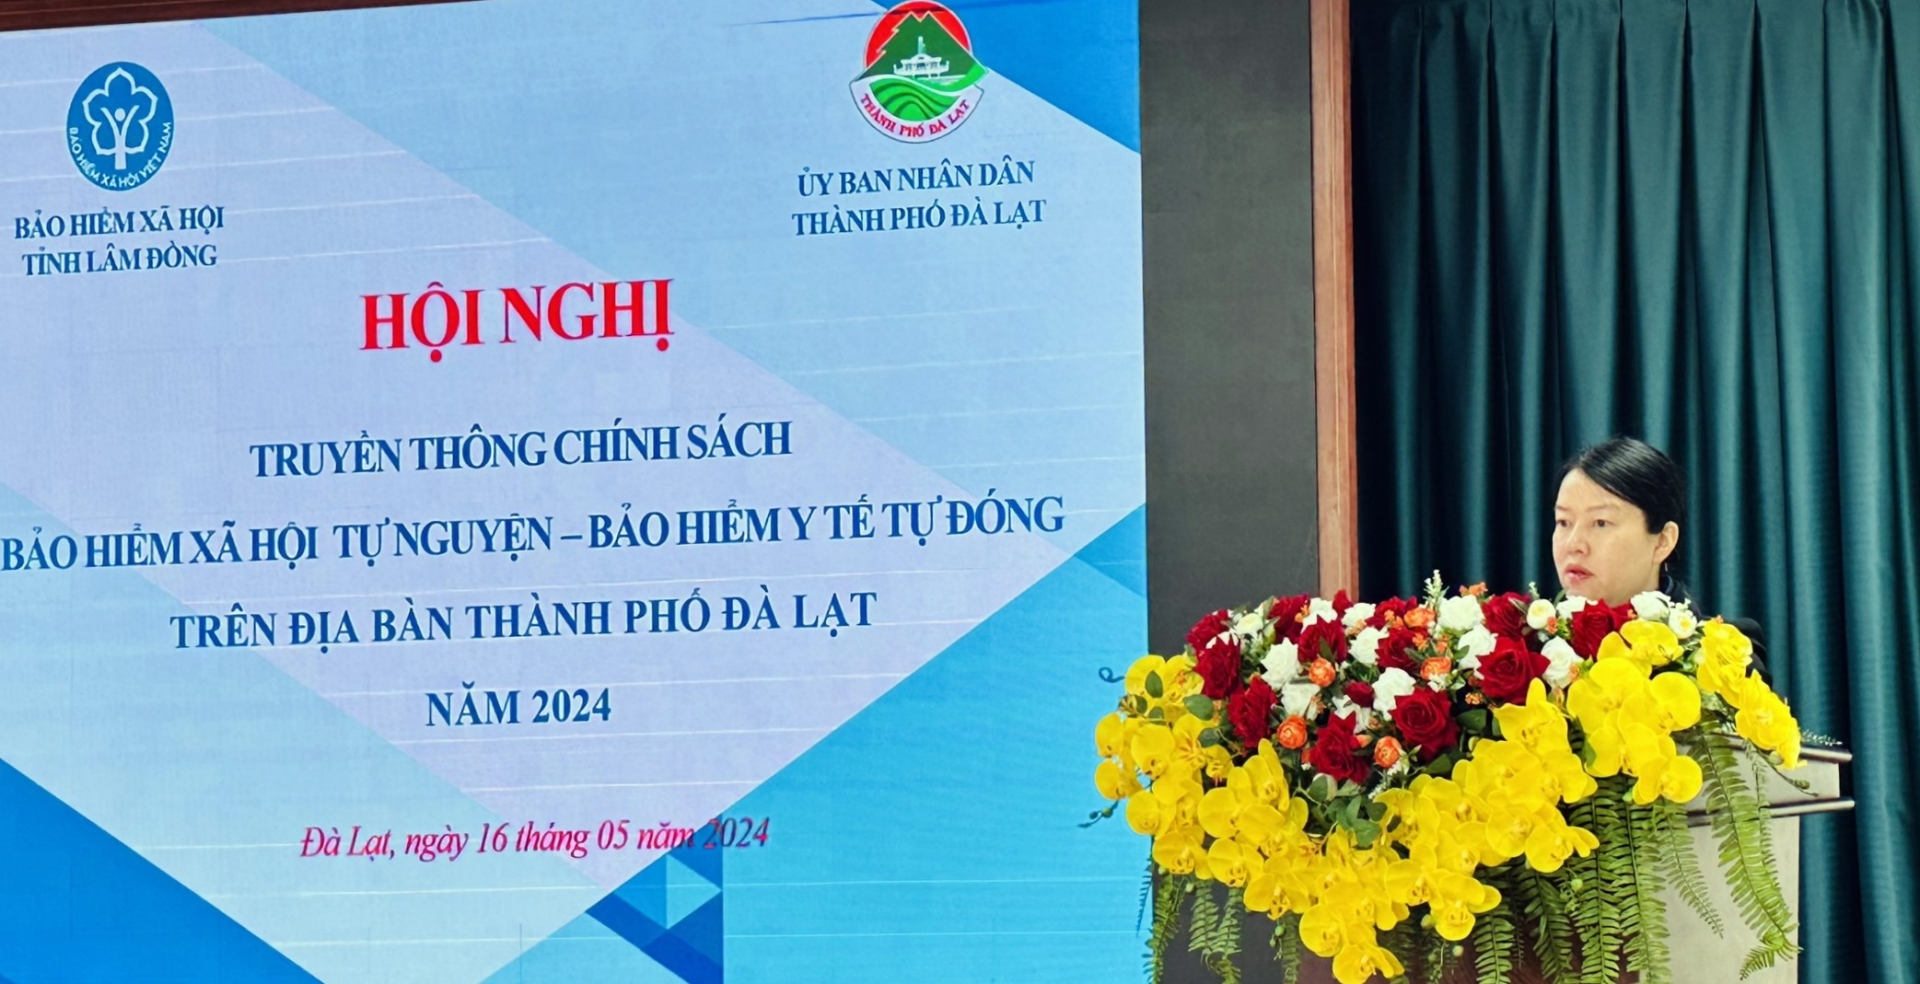 Bà Trần Thị Vũ Loan –Phó Chủ tịch UBND Thành phố Đà Lạt phát biểu tại hội nghị